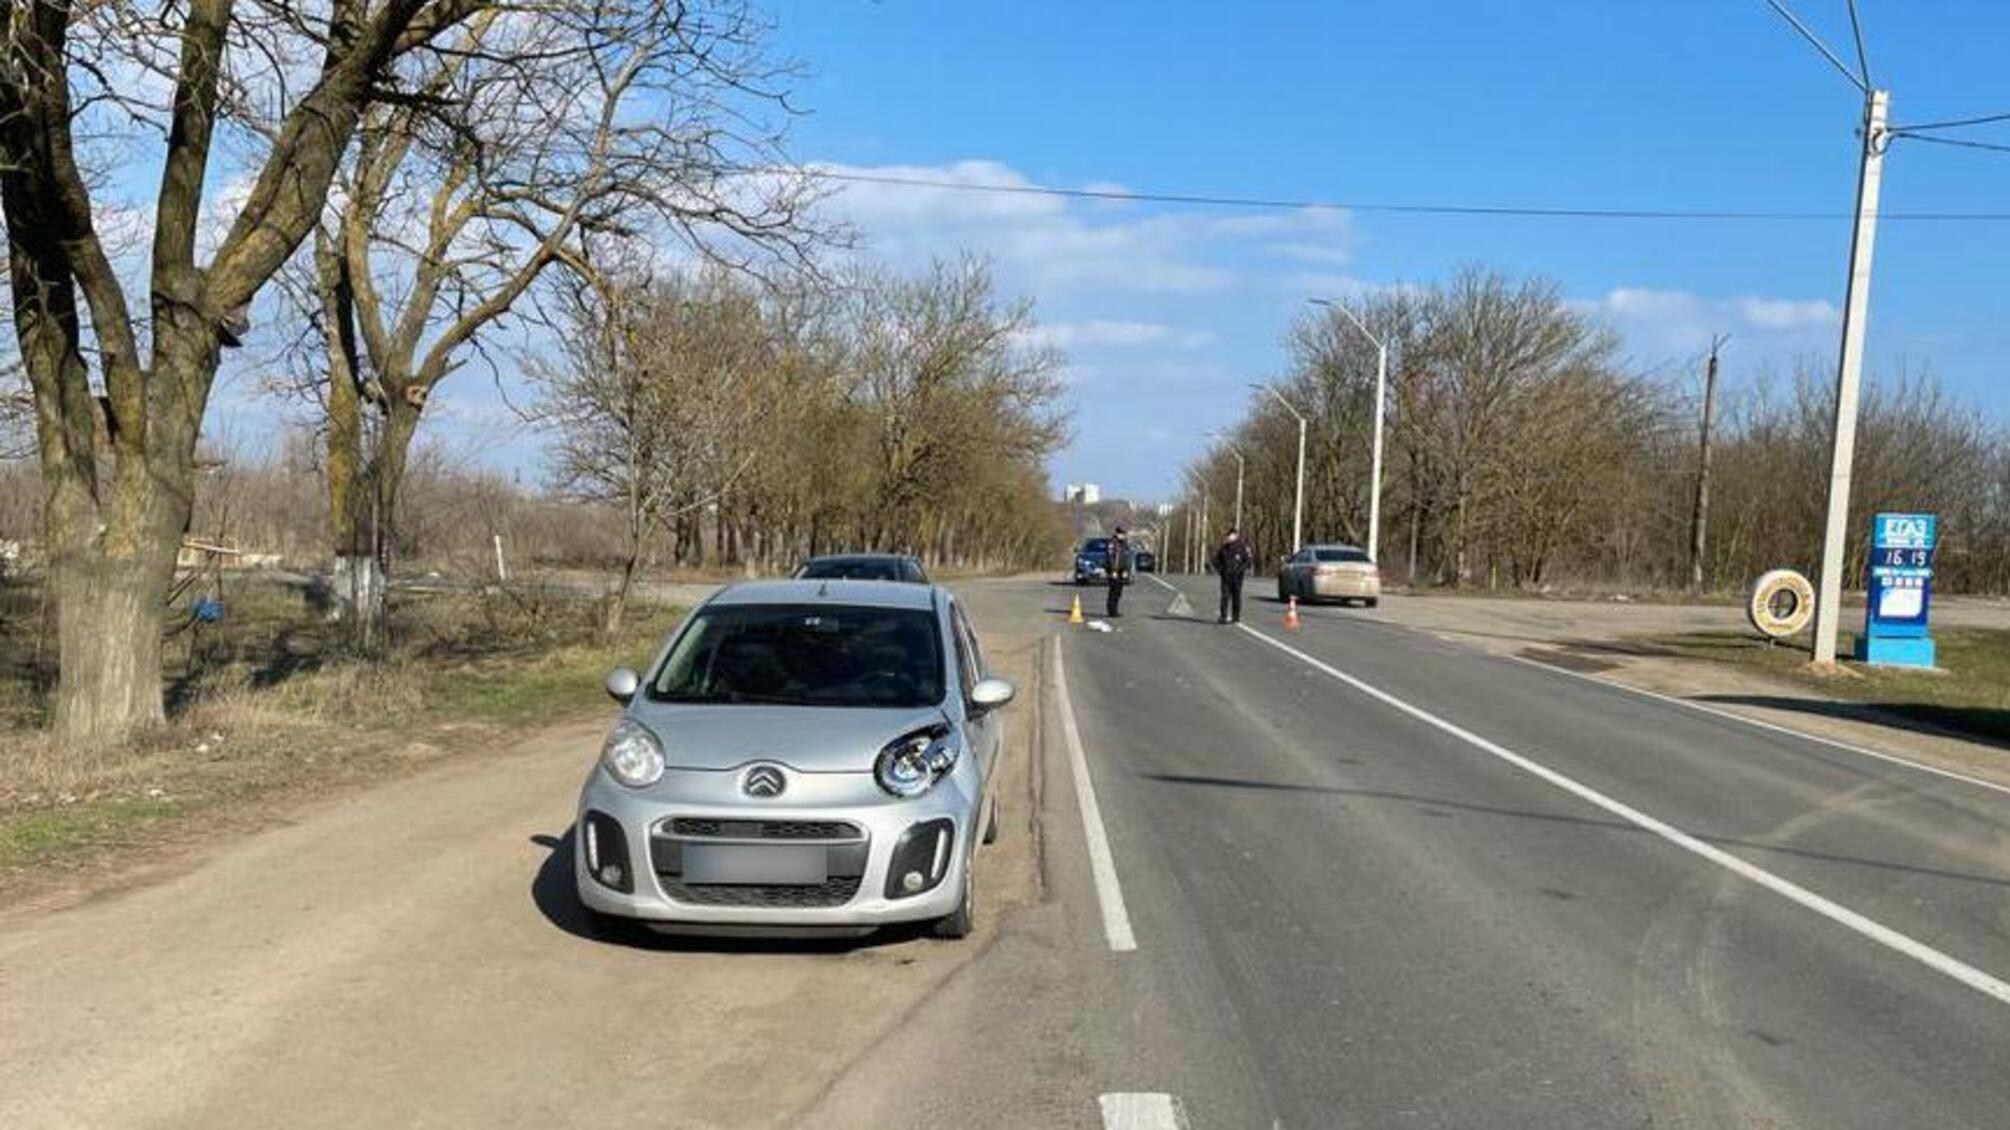 Поліцейські розслідують обставини ДТП на трасі Одеса-Южне, в якій загинула дитина